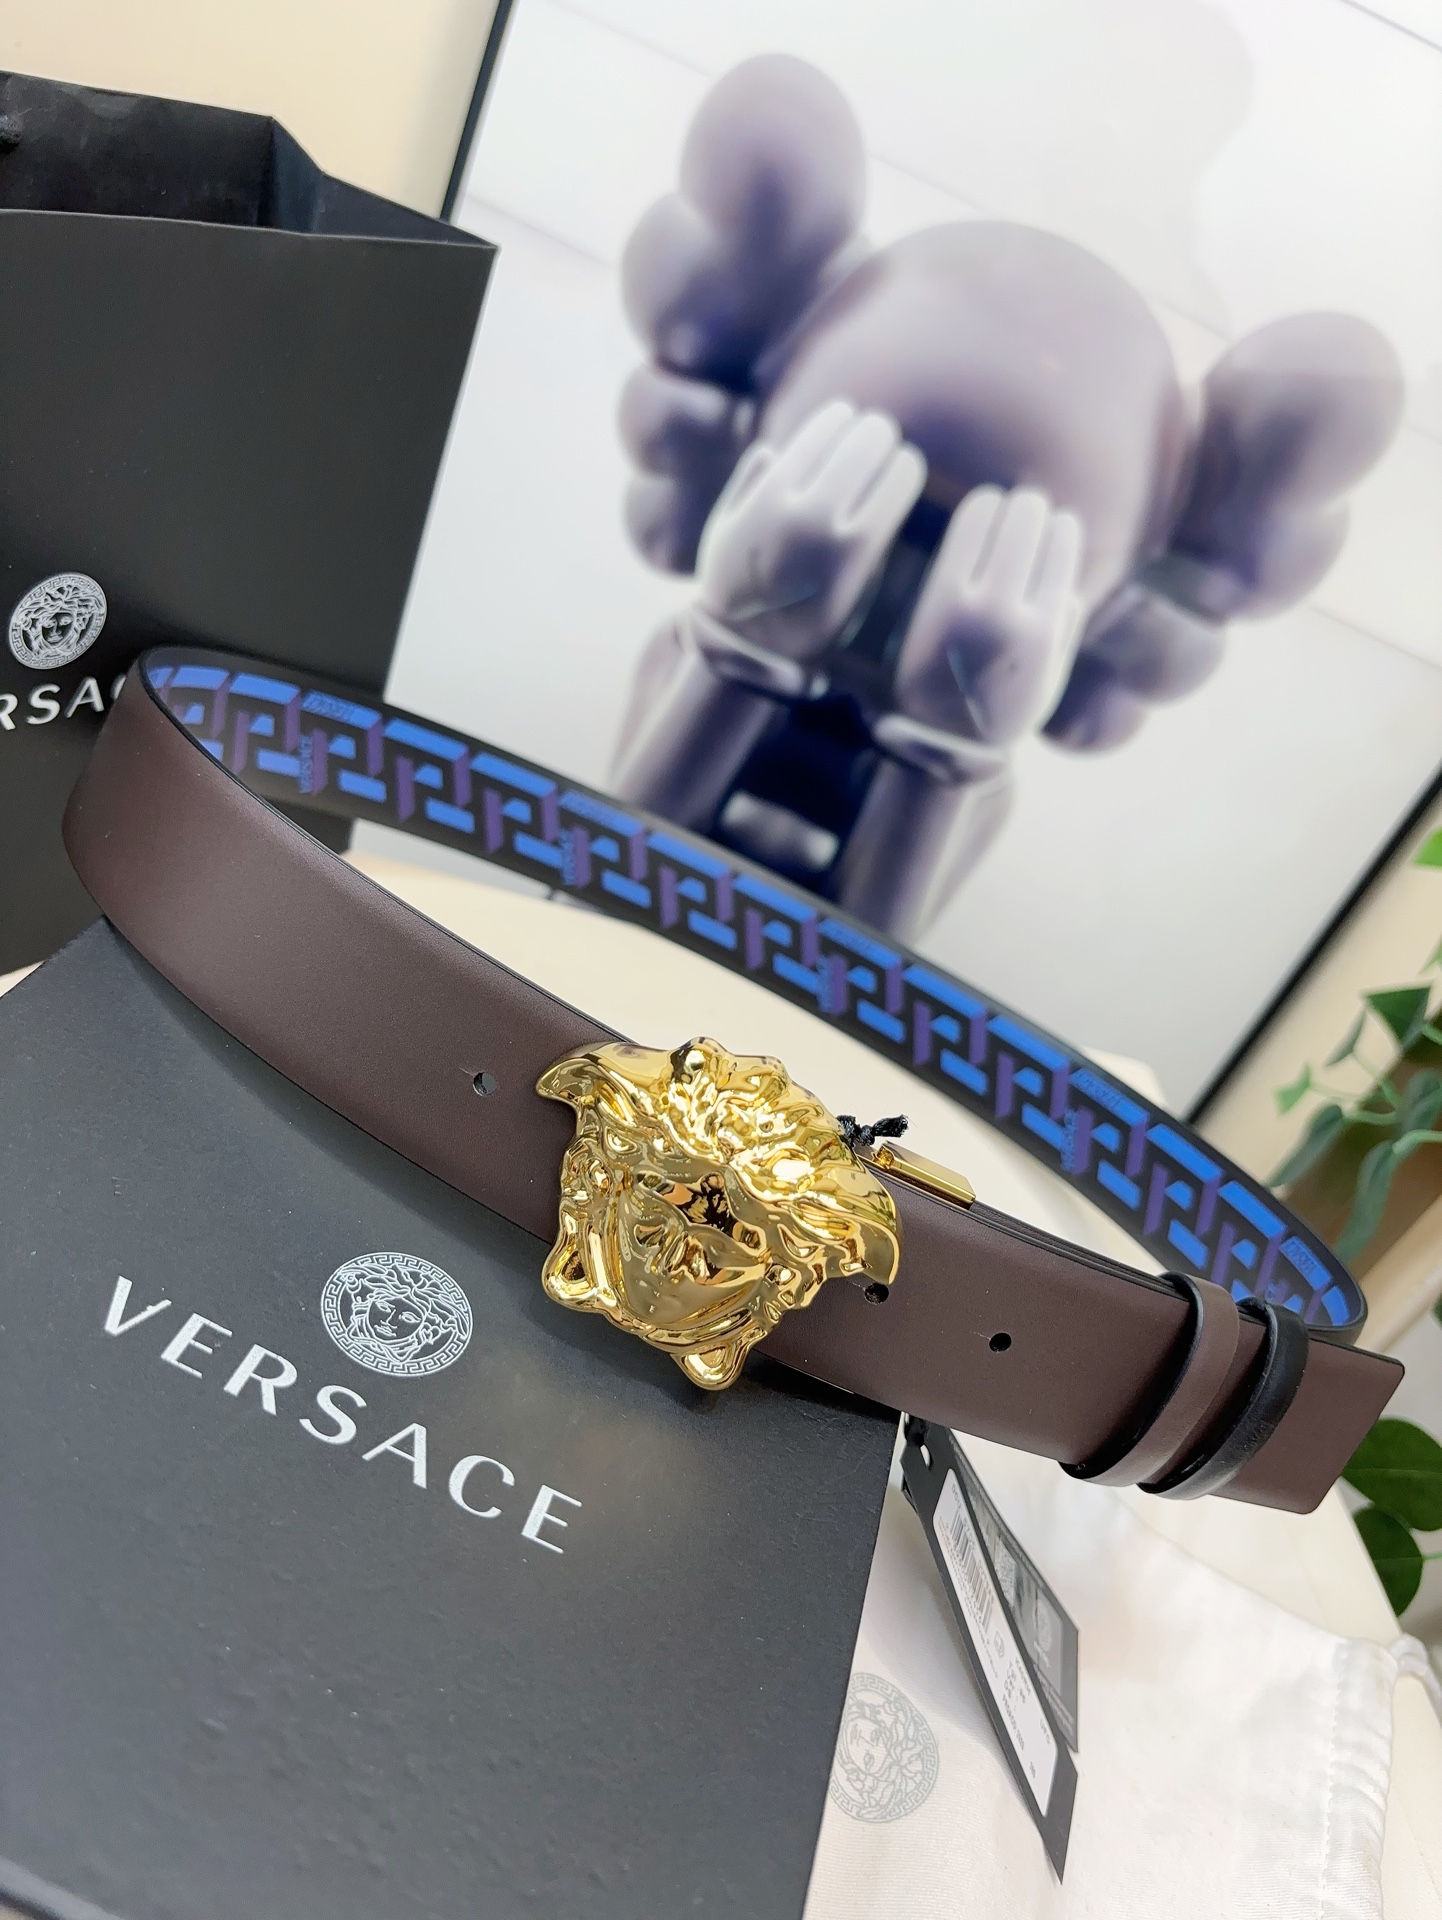 范思哲此款经典的Versace腰带由柔软的小牛皮制成饰有LaGreca印花并配有3D美杜莎腰带扣4.0c